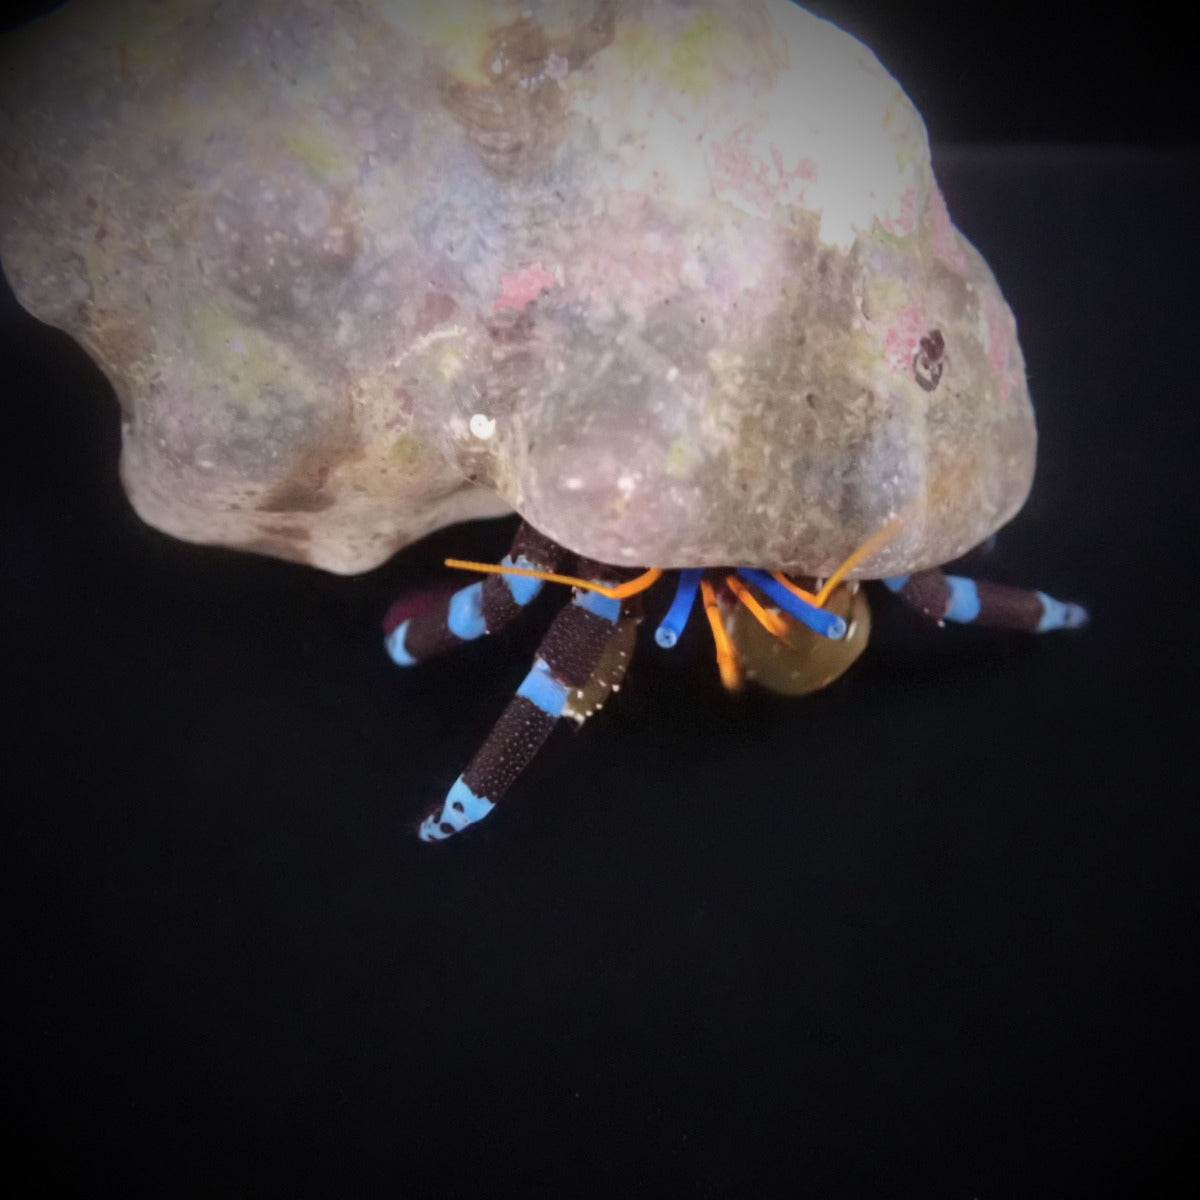 Calcinus elegans - Electric blue hermit crab